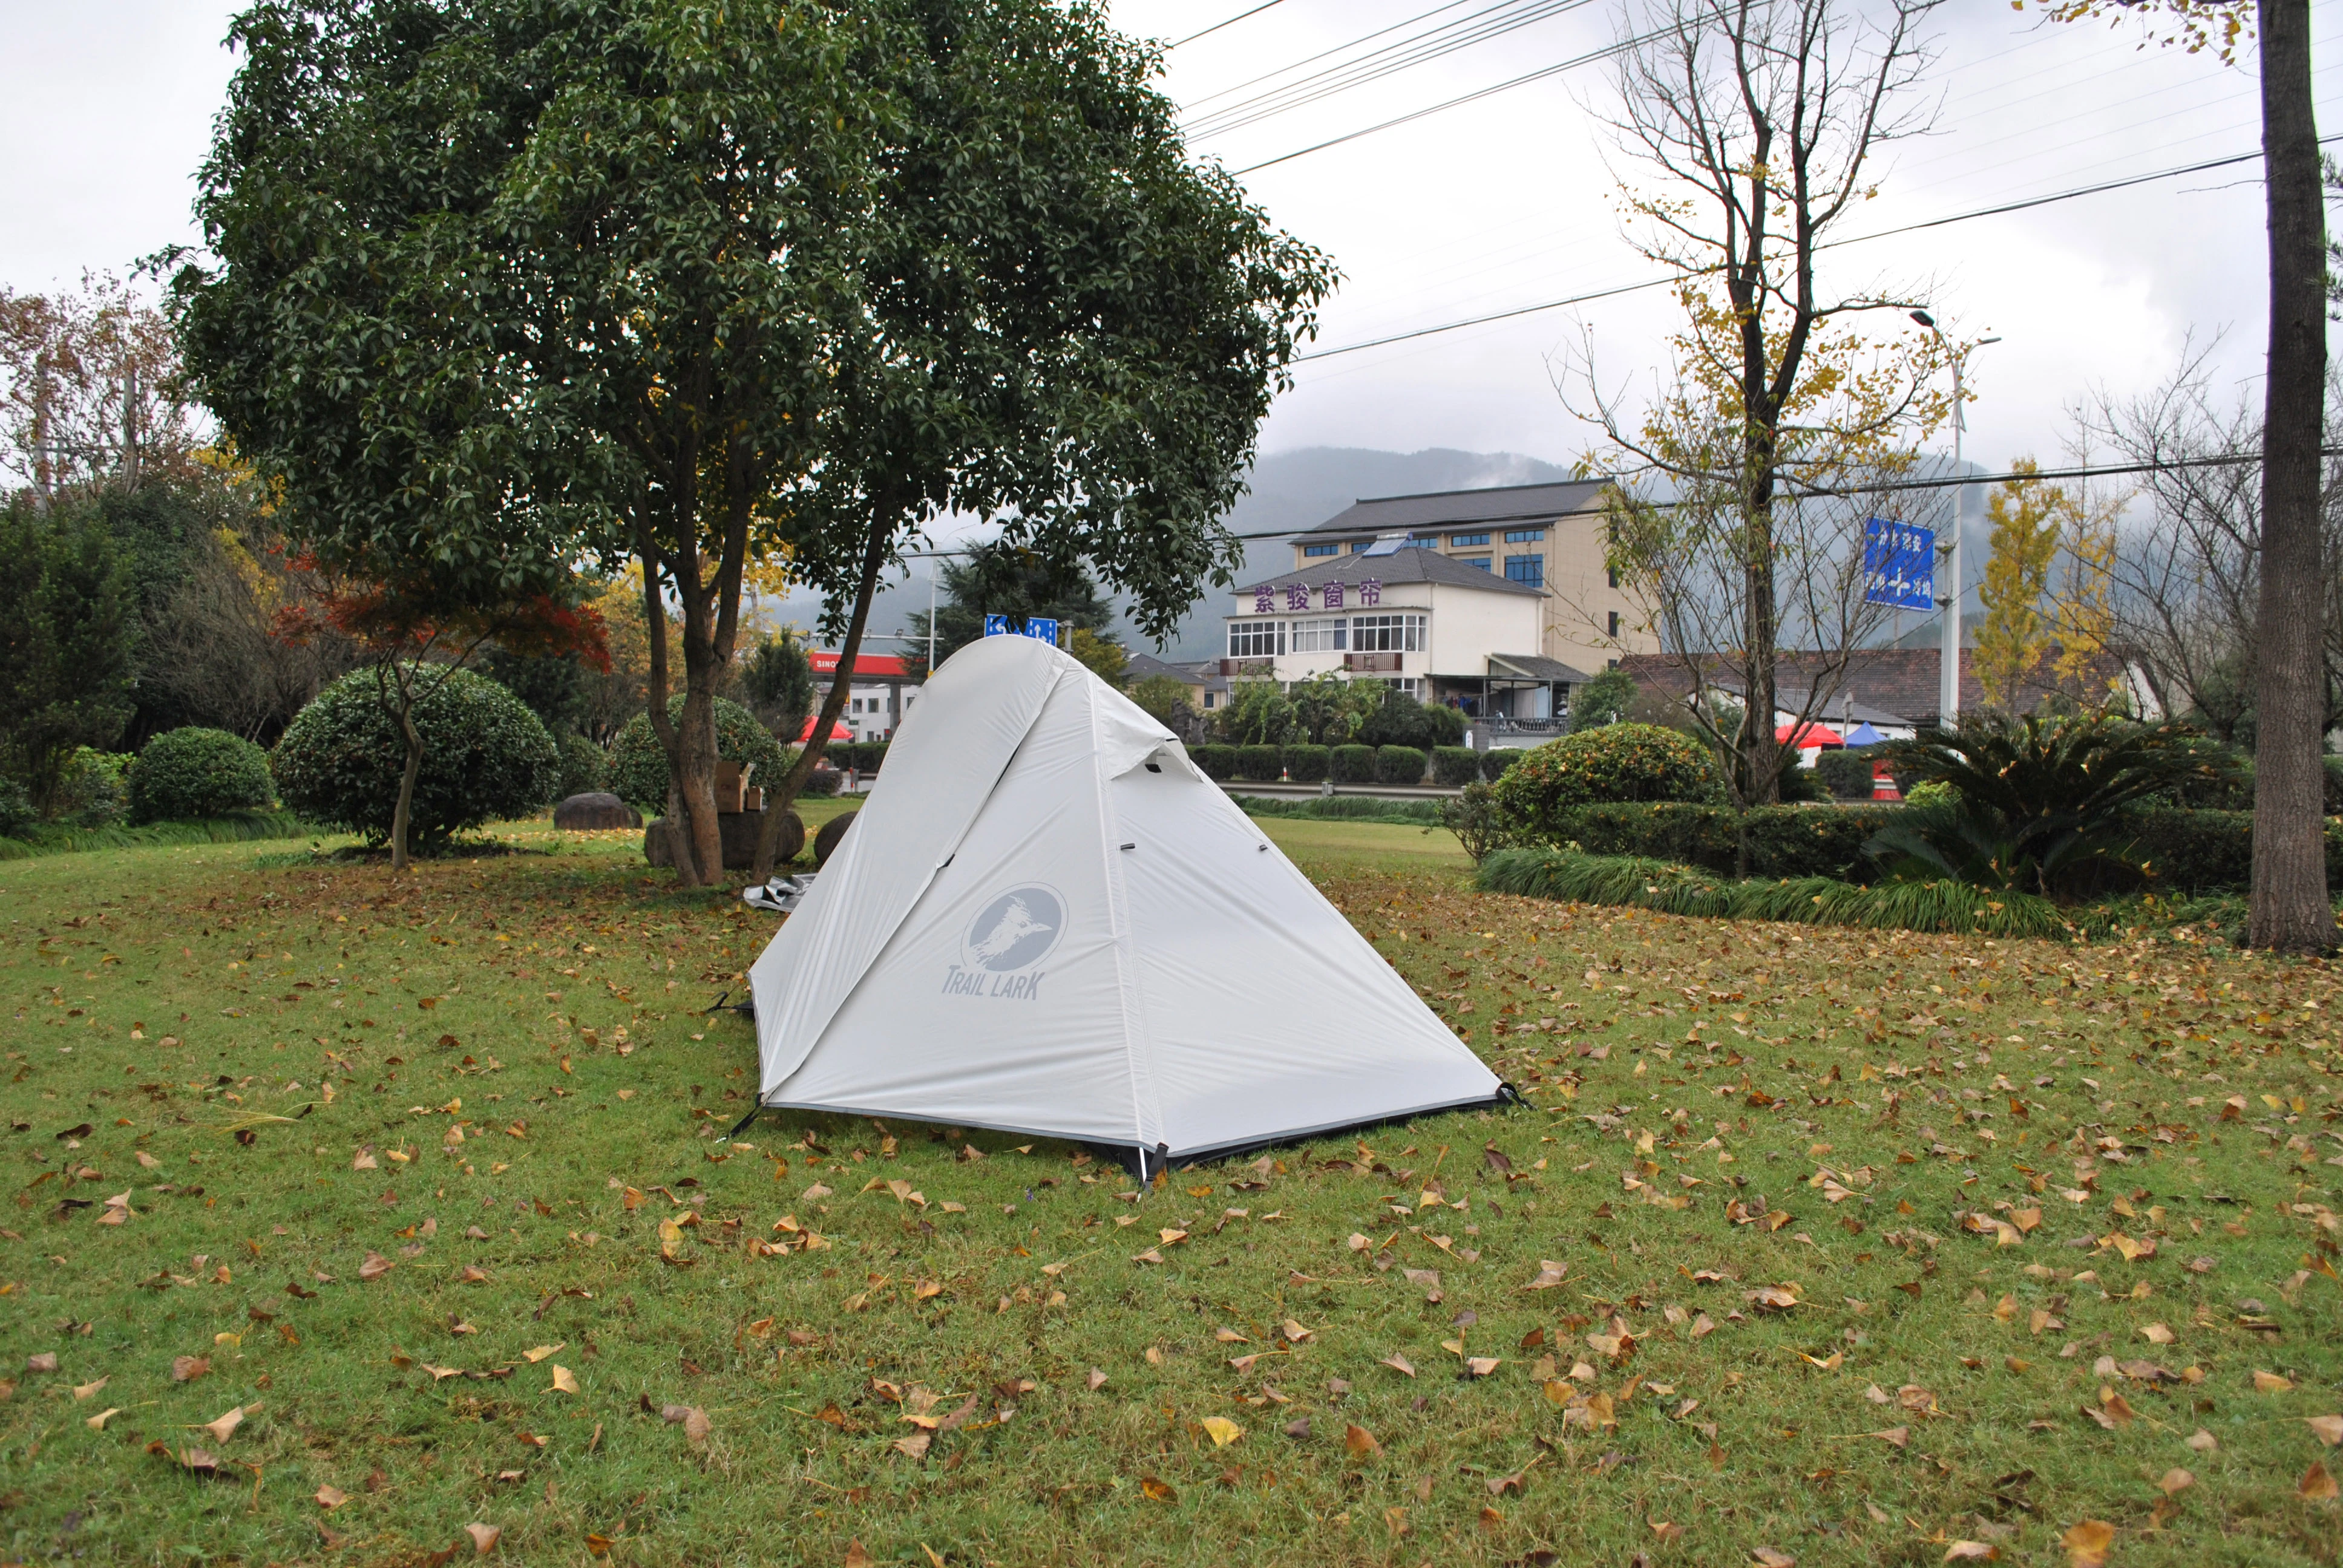 20D Nemo Hornet Ultralight Backpacken Tent Komen Met Aluminium Haringen,  Reflecterende Touw & Draagtas, 1 Persoon 20D Ultralichte Tent|Tenten| -  AliExpress